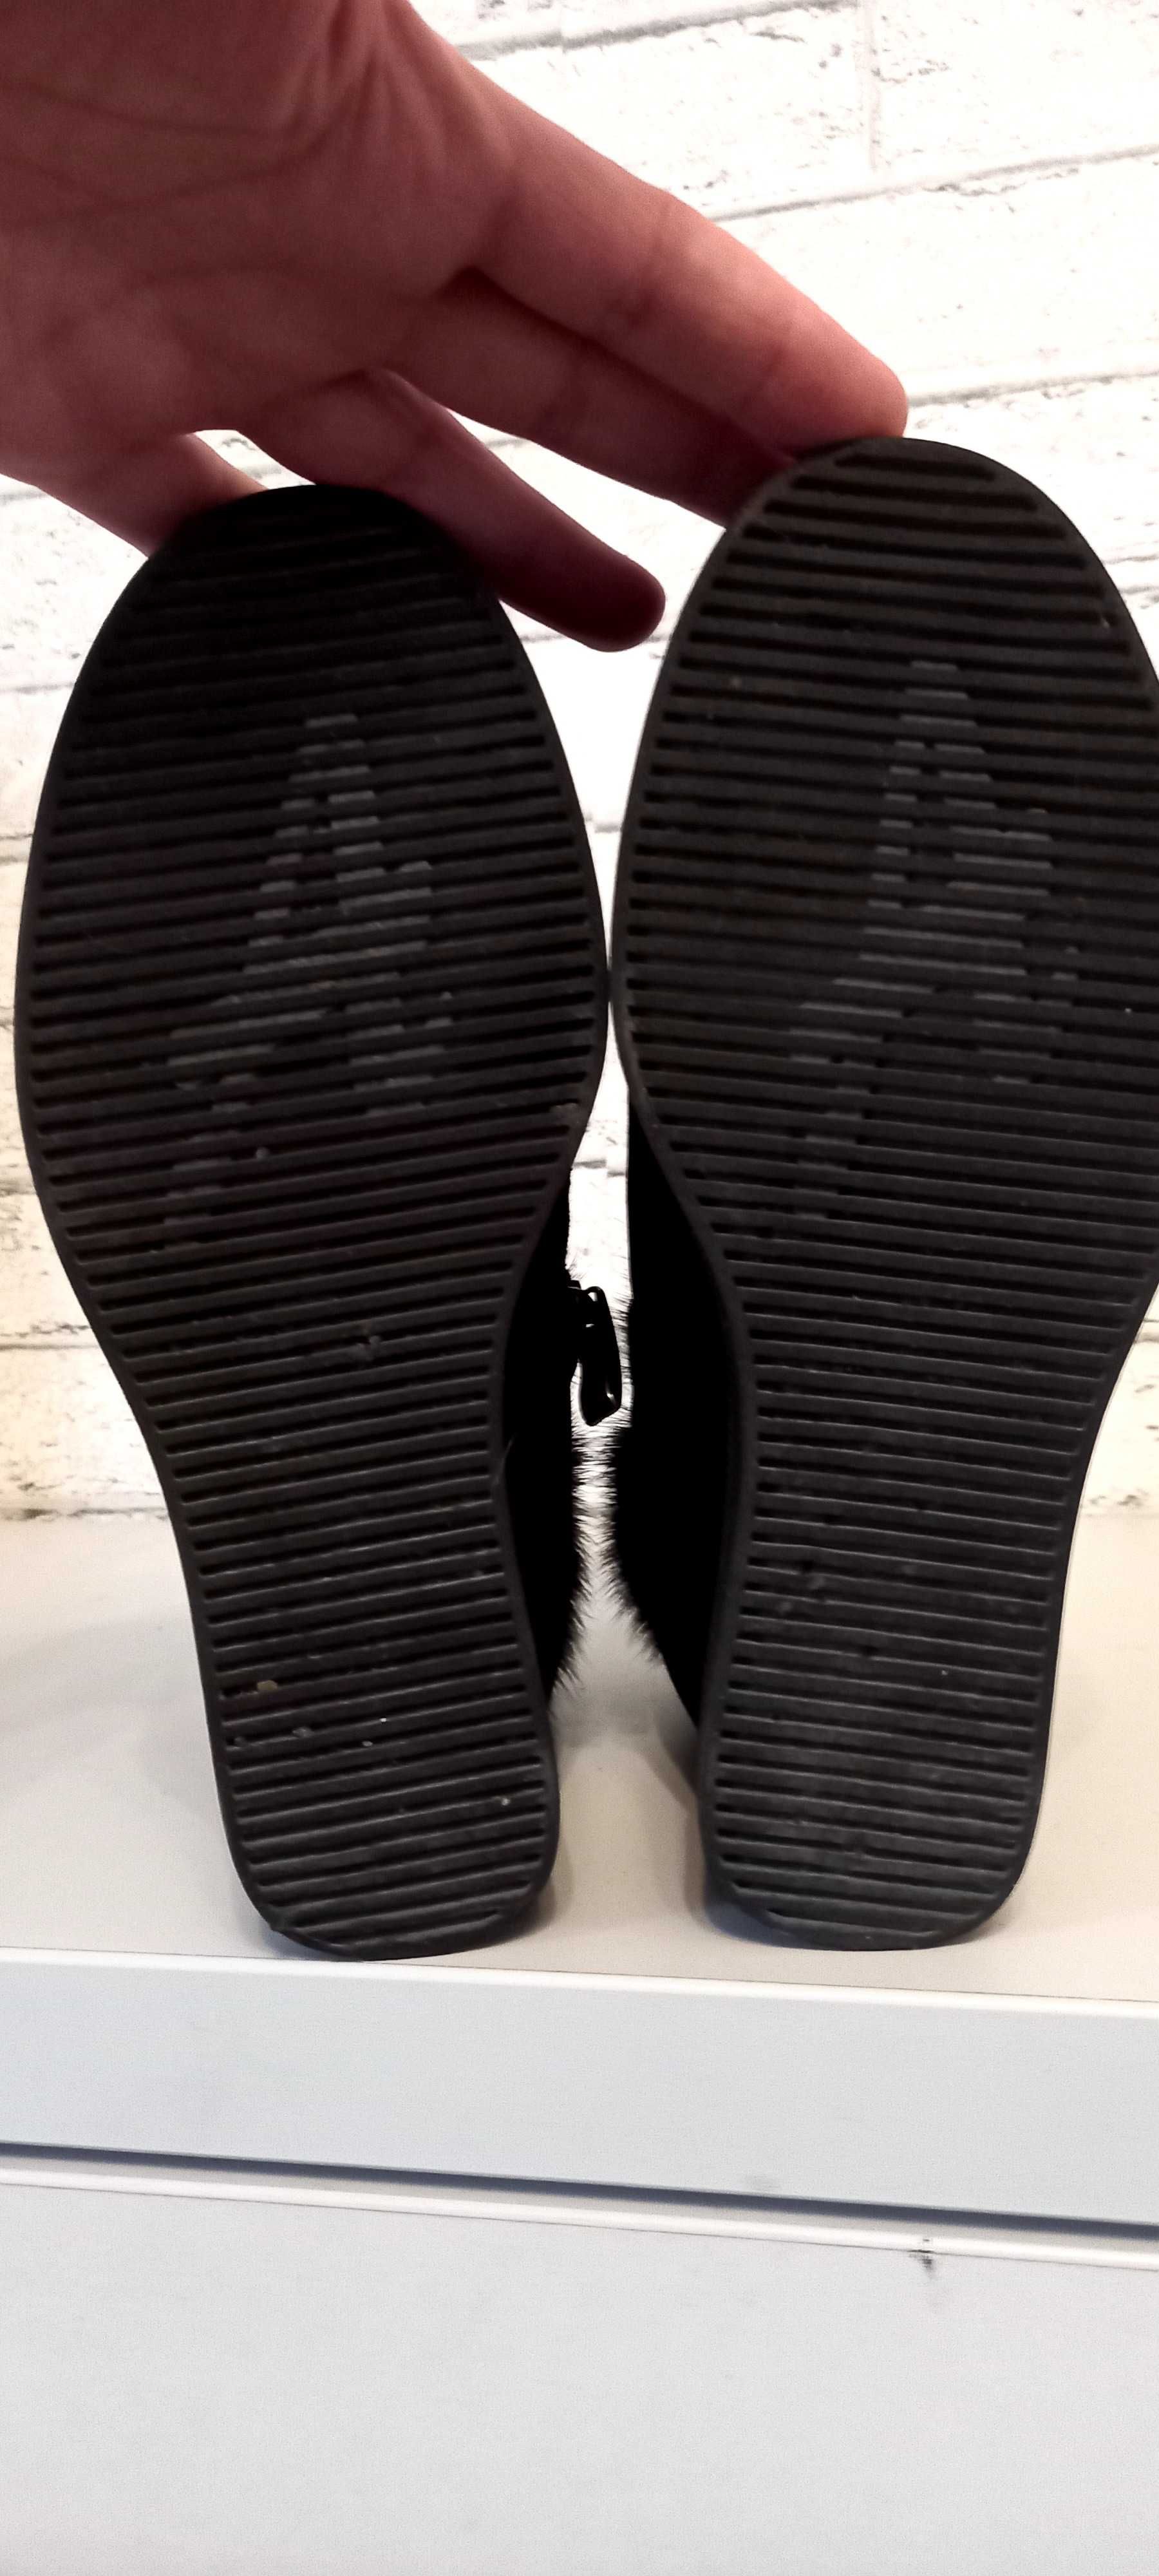 Ботинки зимние женские, размер 37